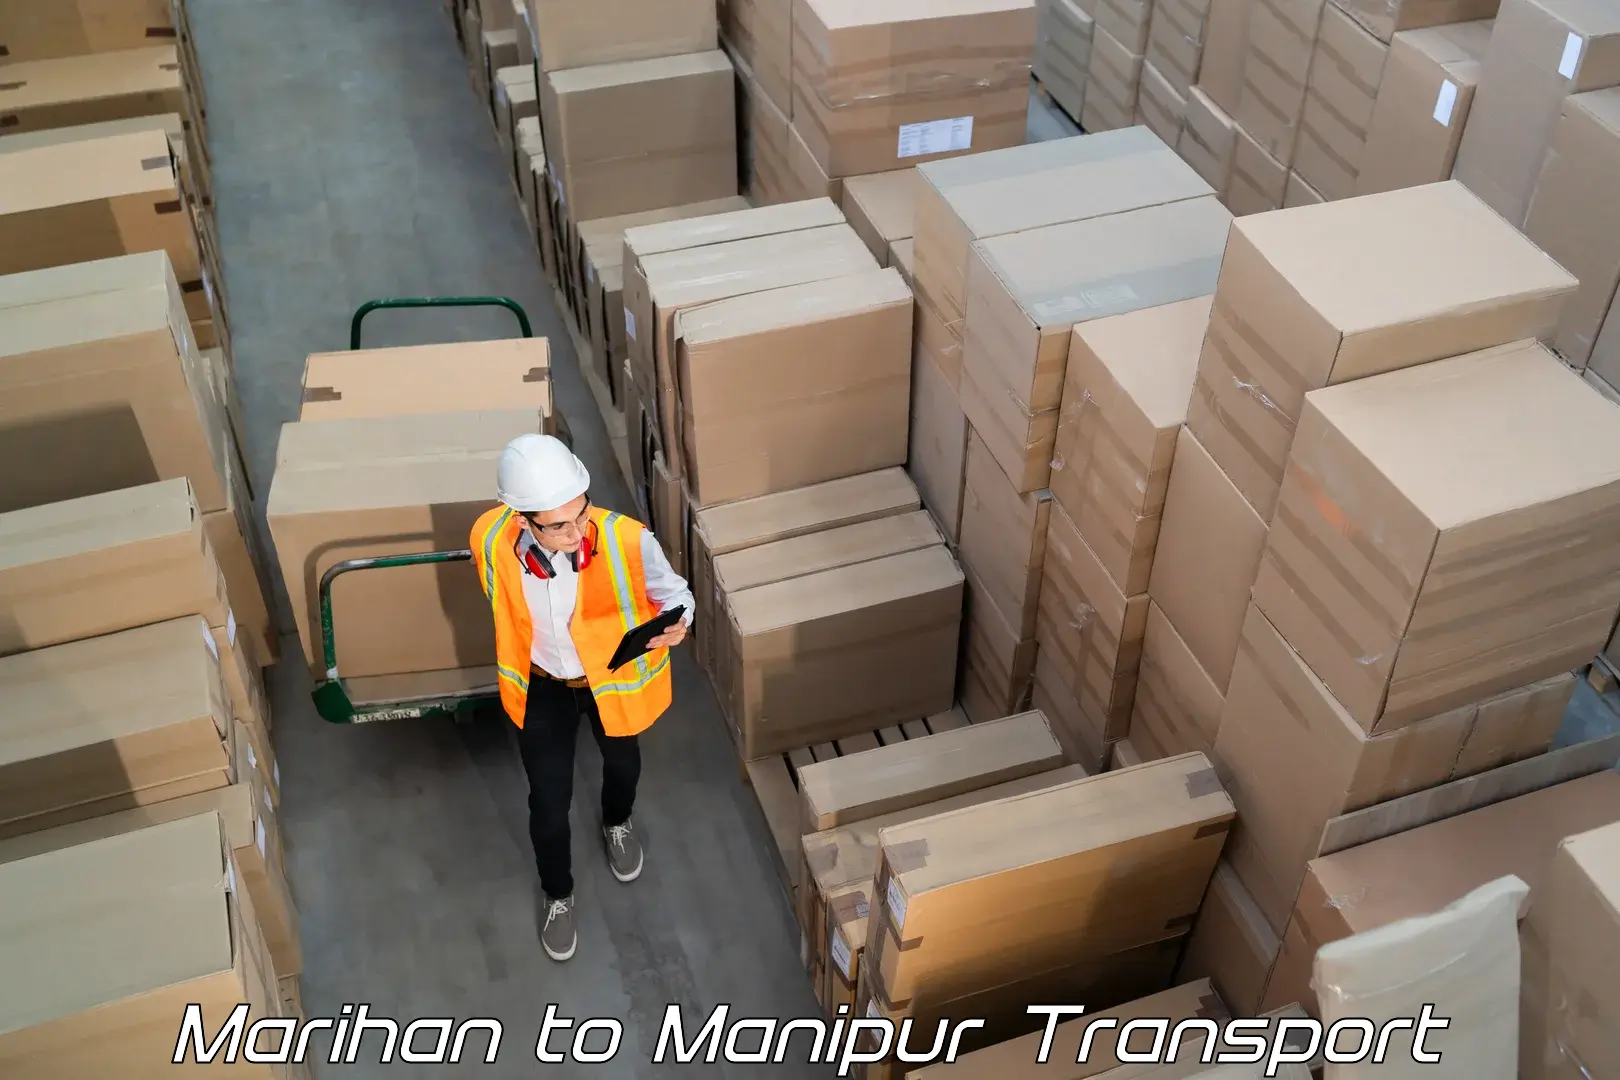 Express transport services Marihan to Imphal